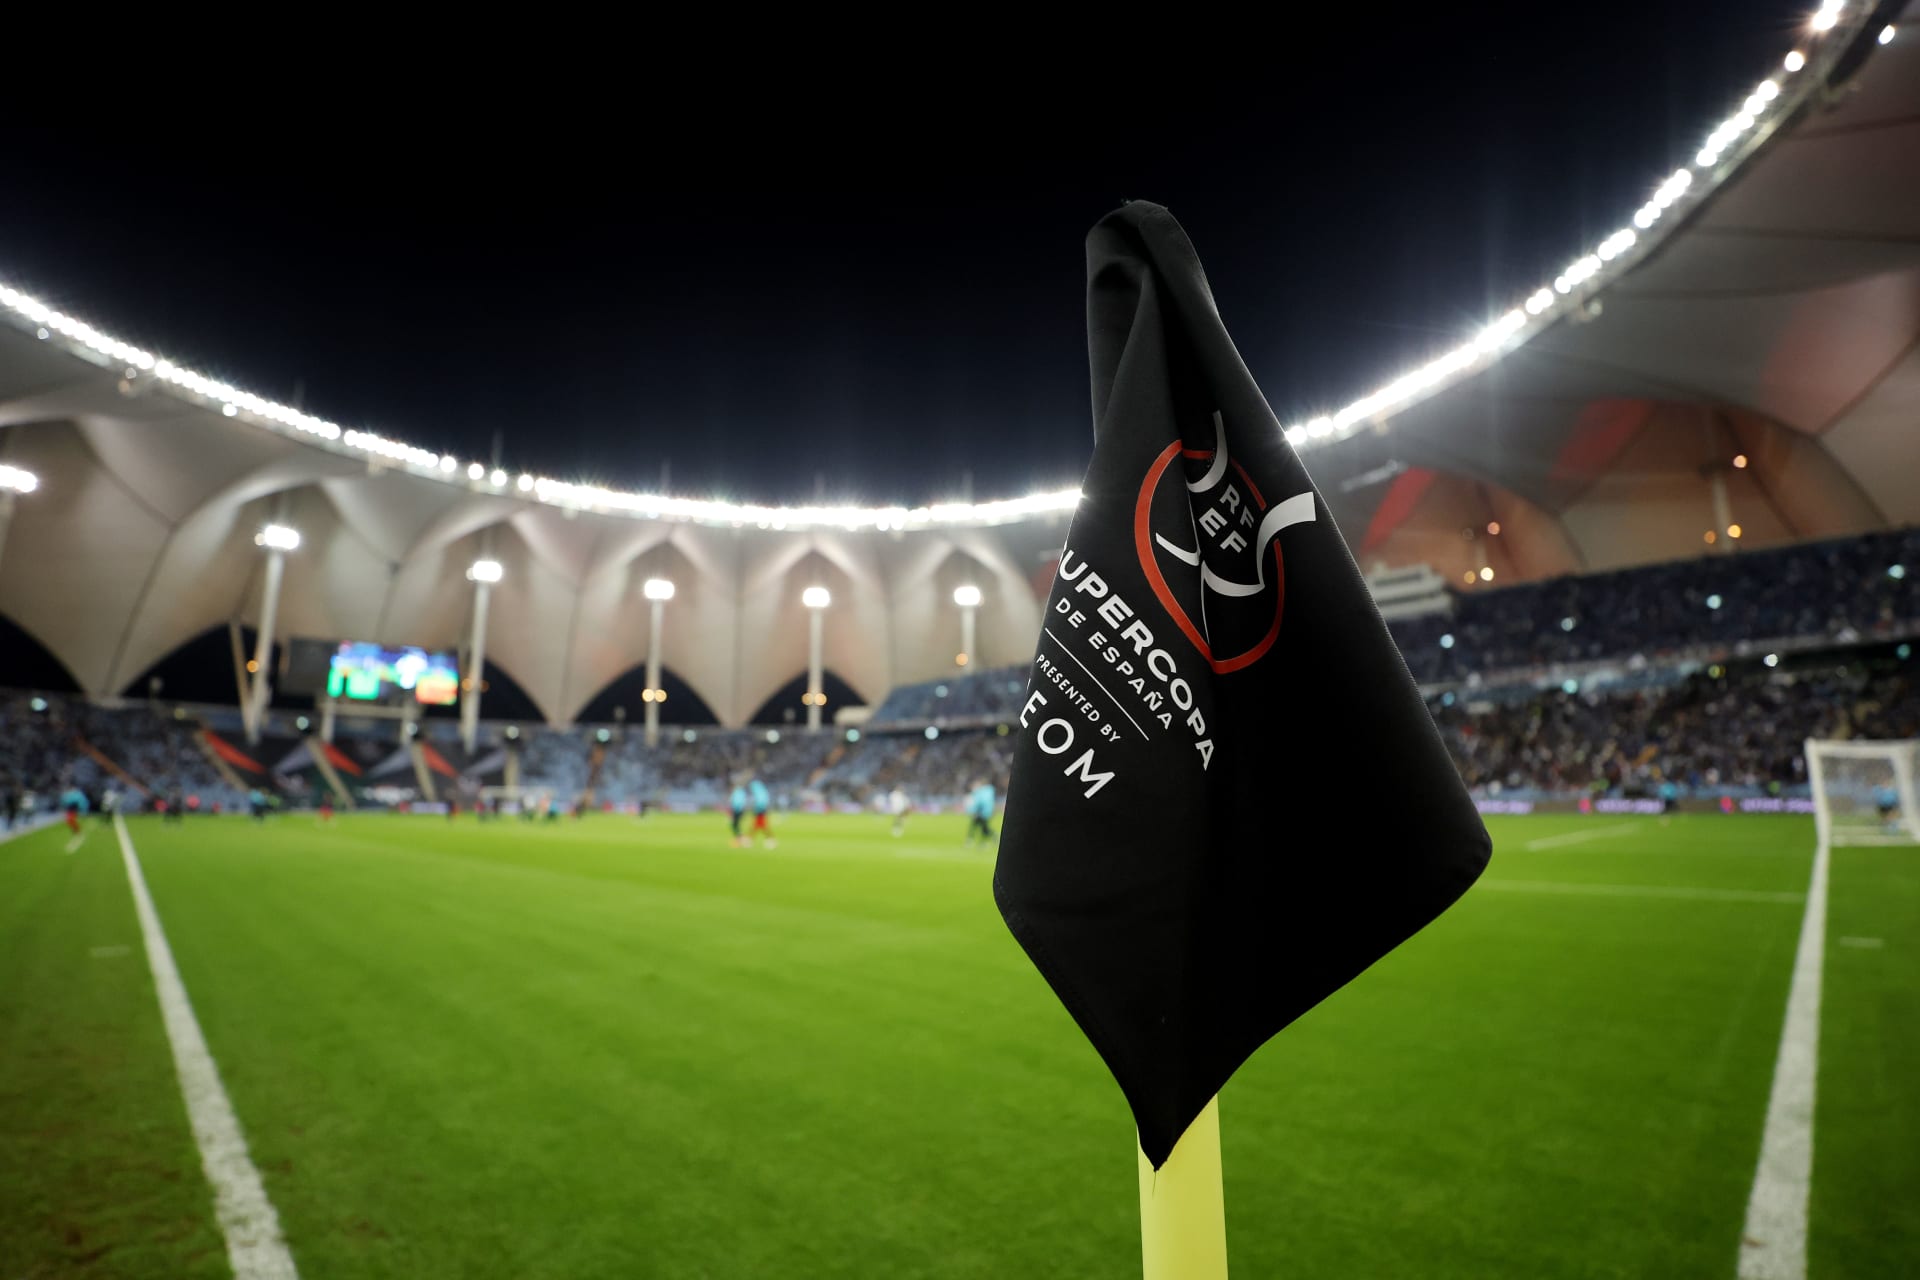 بعد استضافتها للمسابقات الأوروبية.. السعودية تحتضن منافسات بطولة كرة القدم الوطنية الهندية